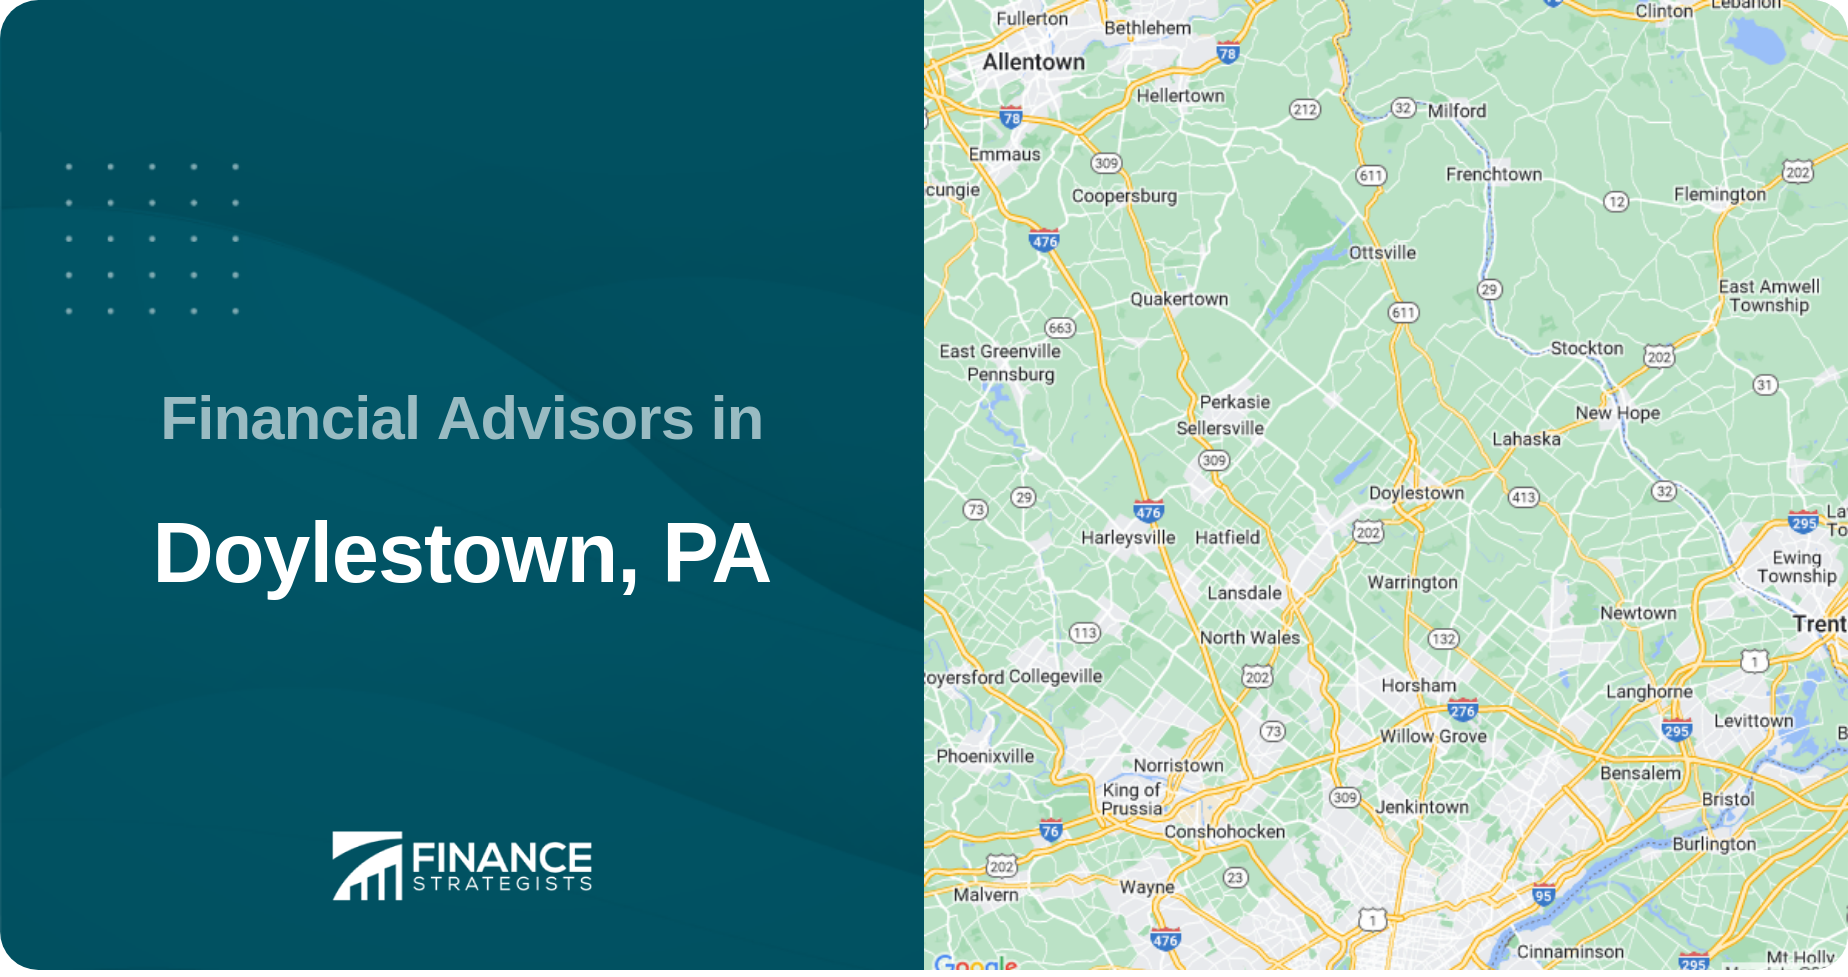 Financial Advisors in Doylestown, PA